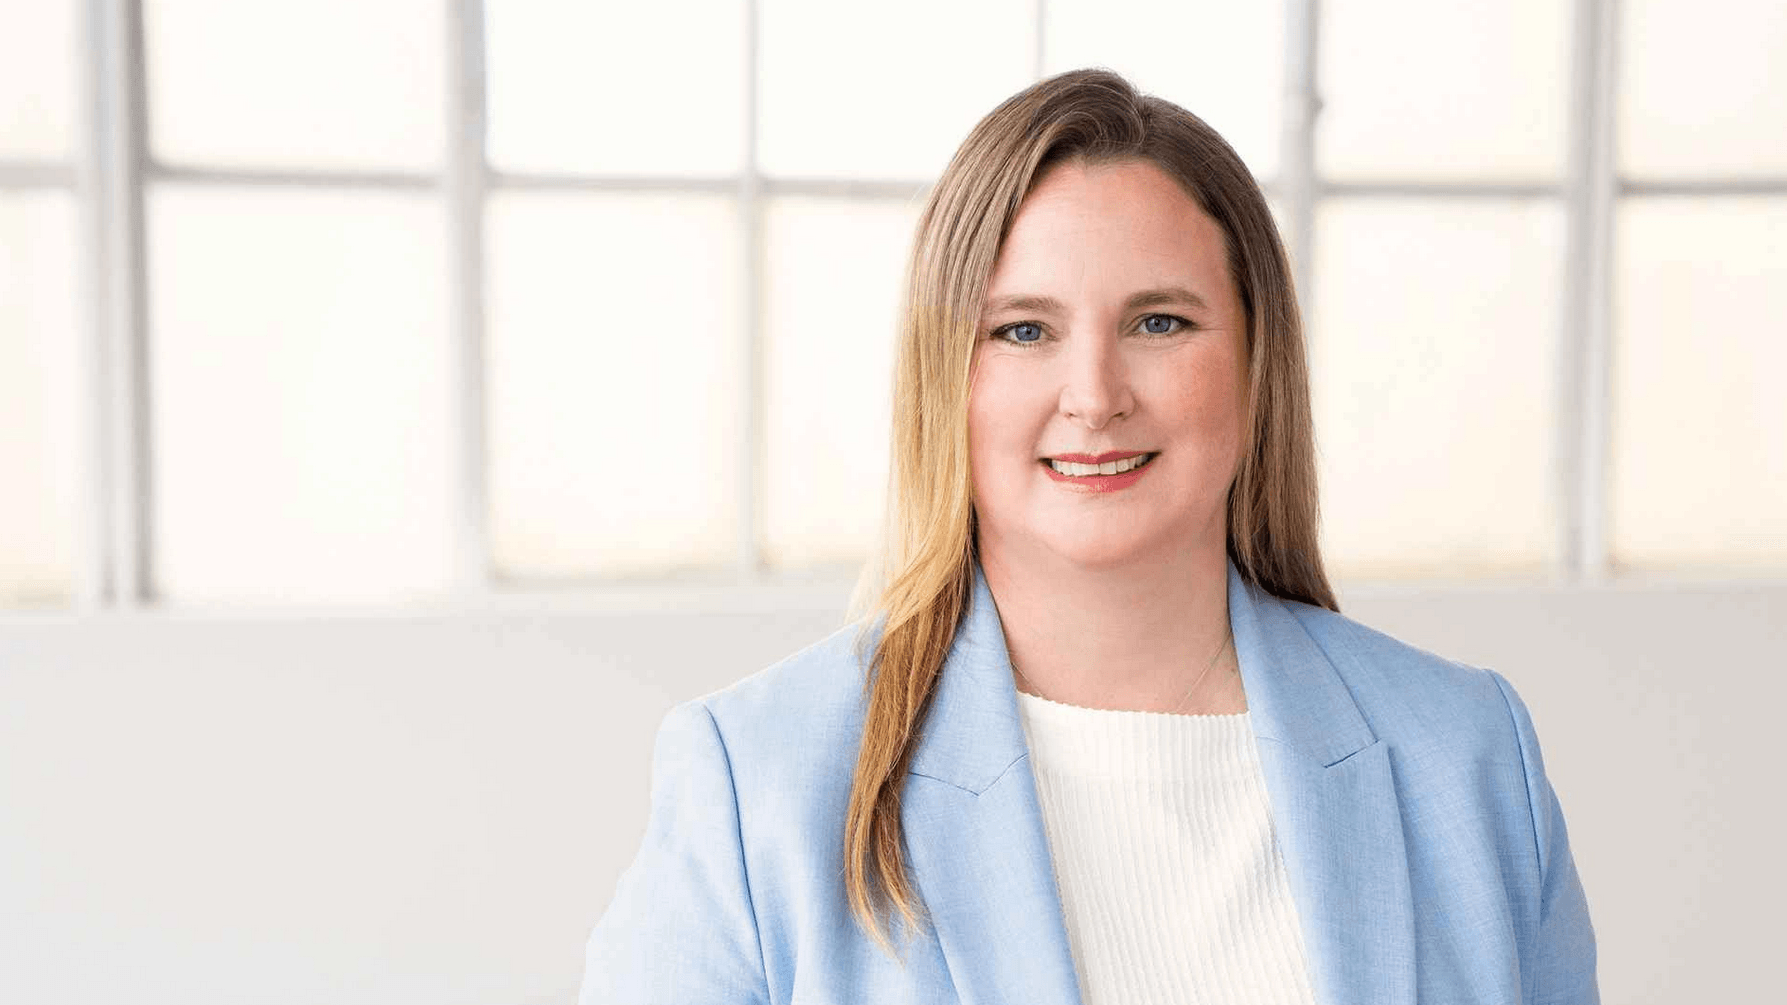 Knall auf Fall räumt Karin Ross ihren CEO-Posten bei GroupM